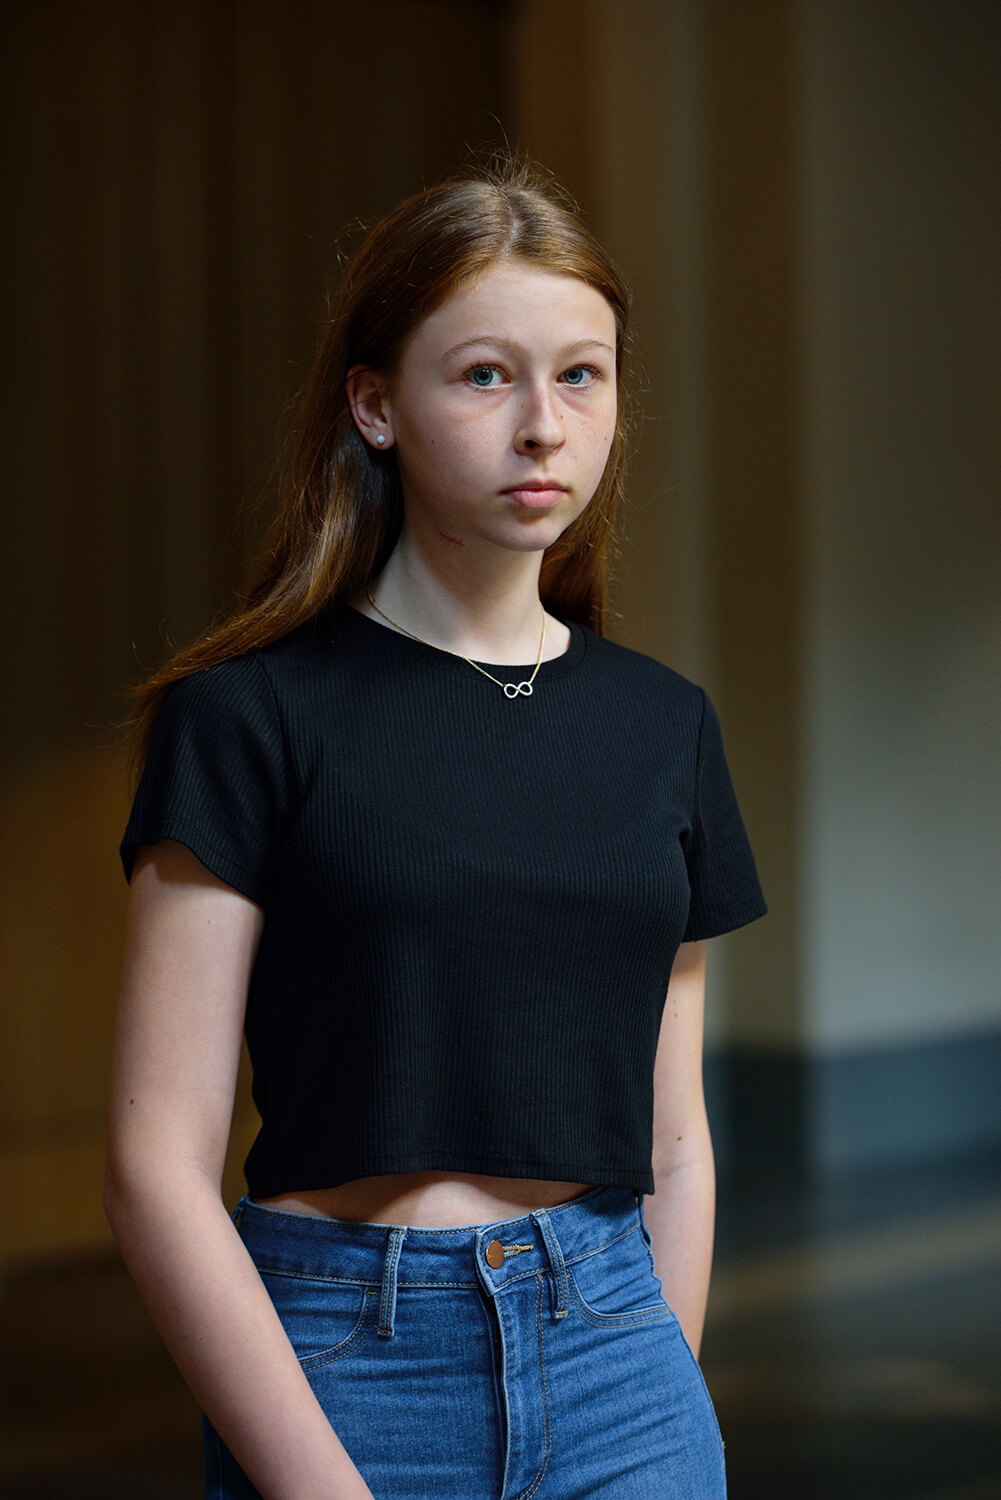 Göran Gnaudschun, Junge Frau mit Unendlichkeitskette, 2015, aus: Mittelland, Pigmentdruck, 46,8 x 31,2 cm